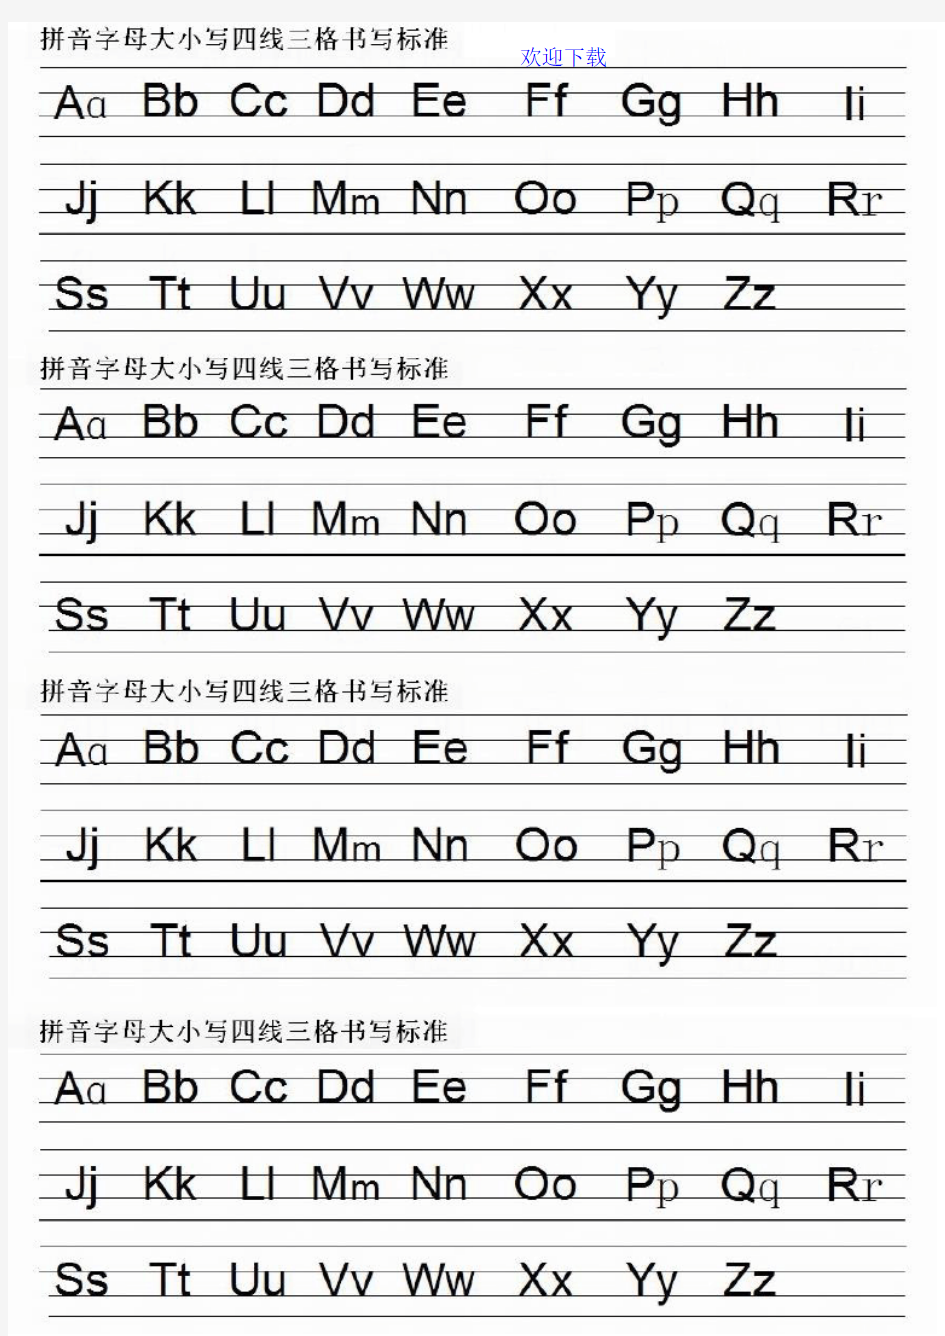 拼音字母及音序表四线格大小写书写规范打印